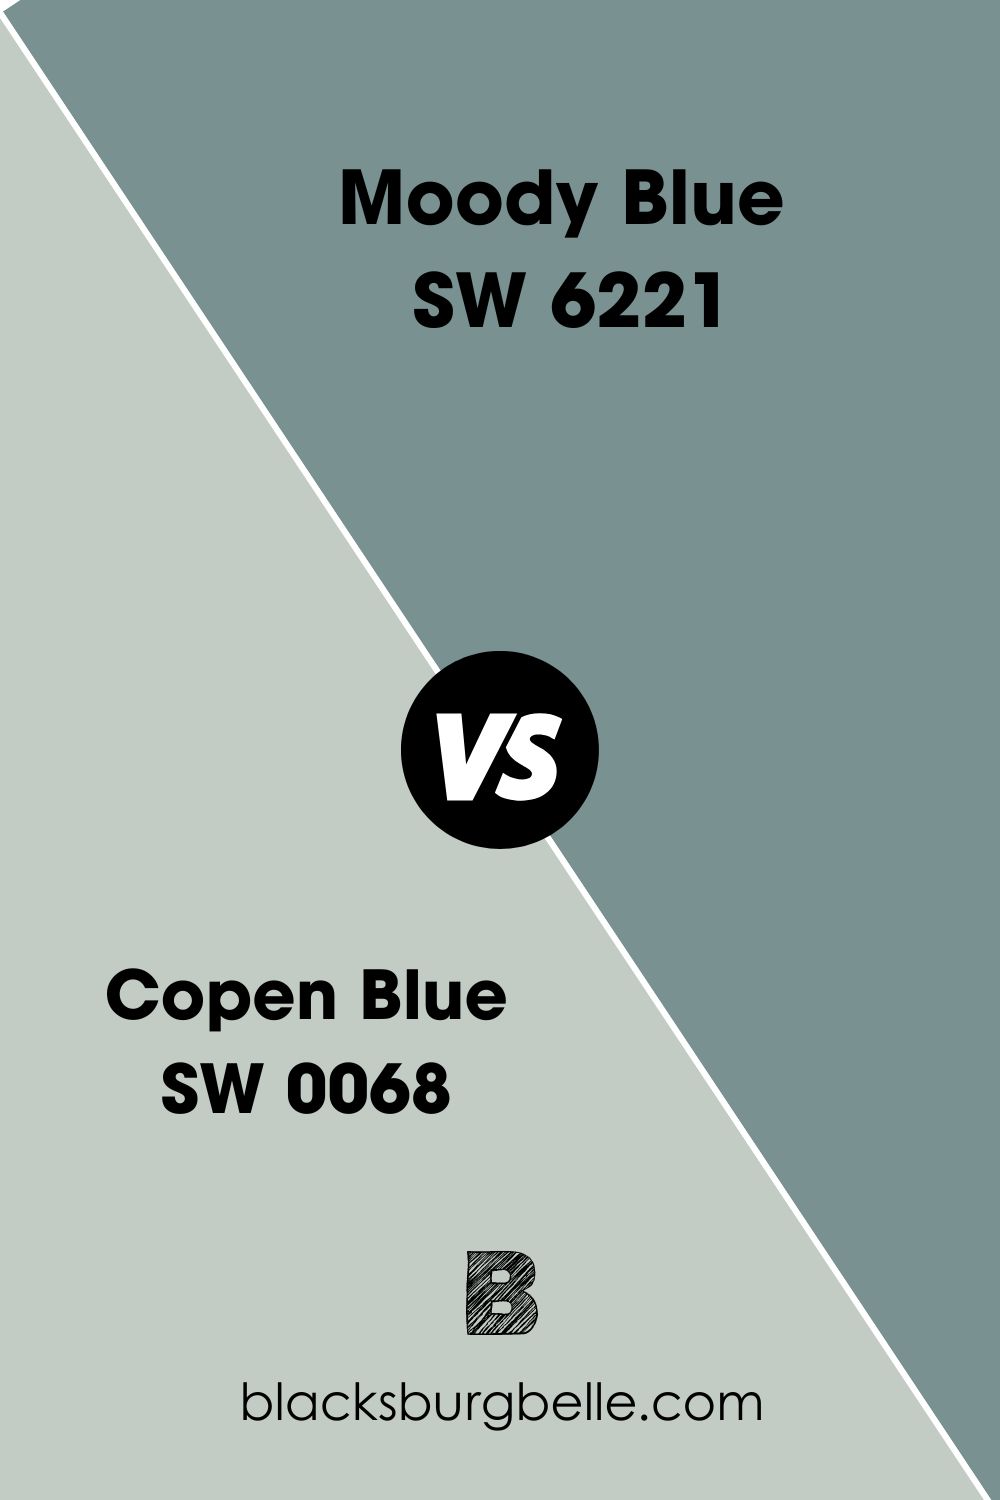 Moody Blue SW 6221 (8)